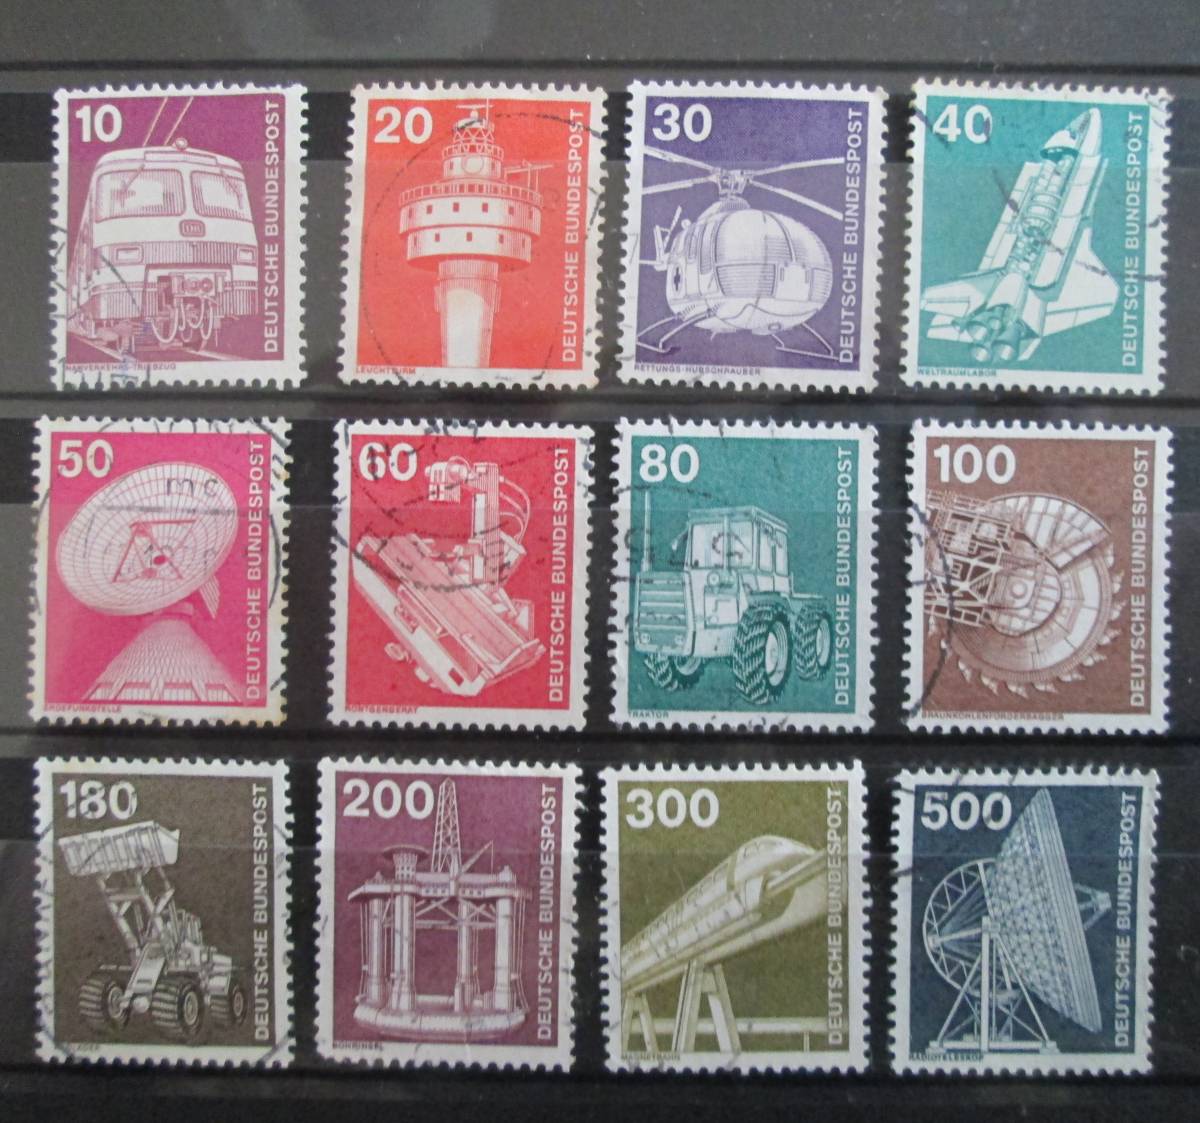 ドイツ普通切手  1975年 産業・技術・機械シリーズ  10～500Pf：ヘリコプター、リニアモーターカー,電波望遠鏡など  12種  使用済みの画像1